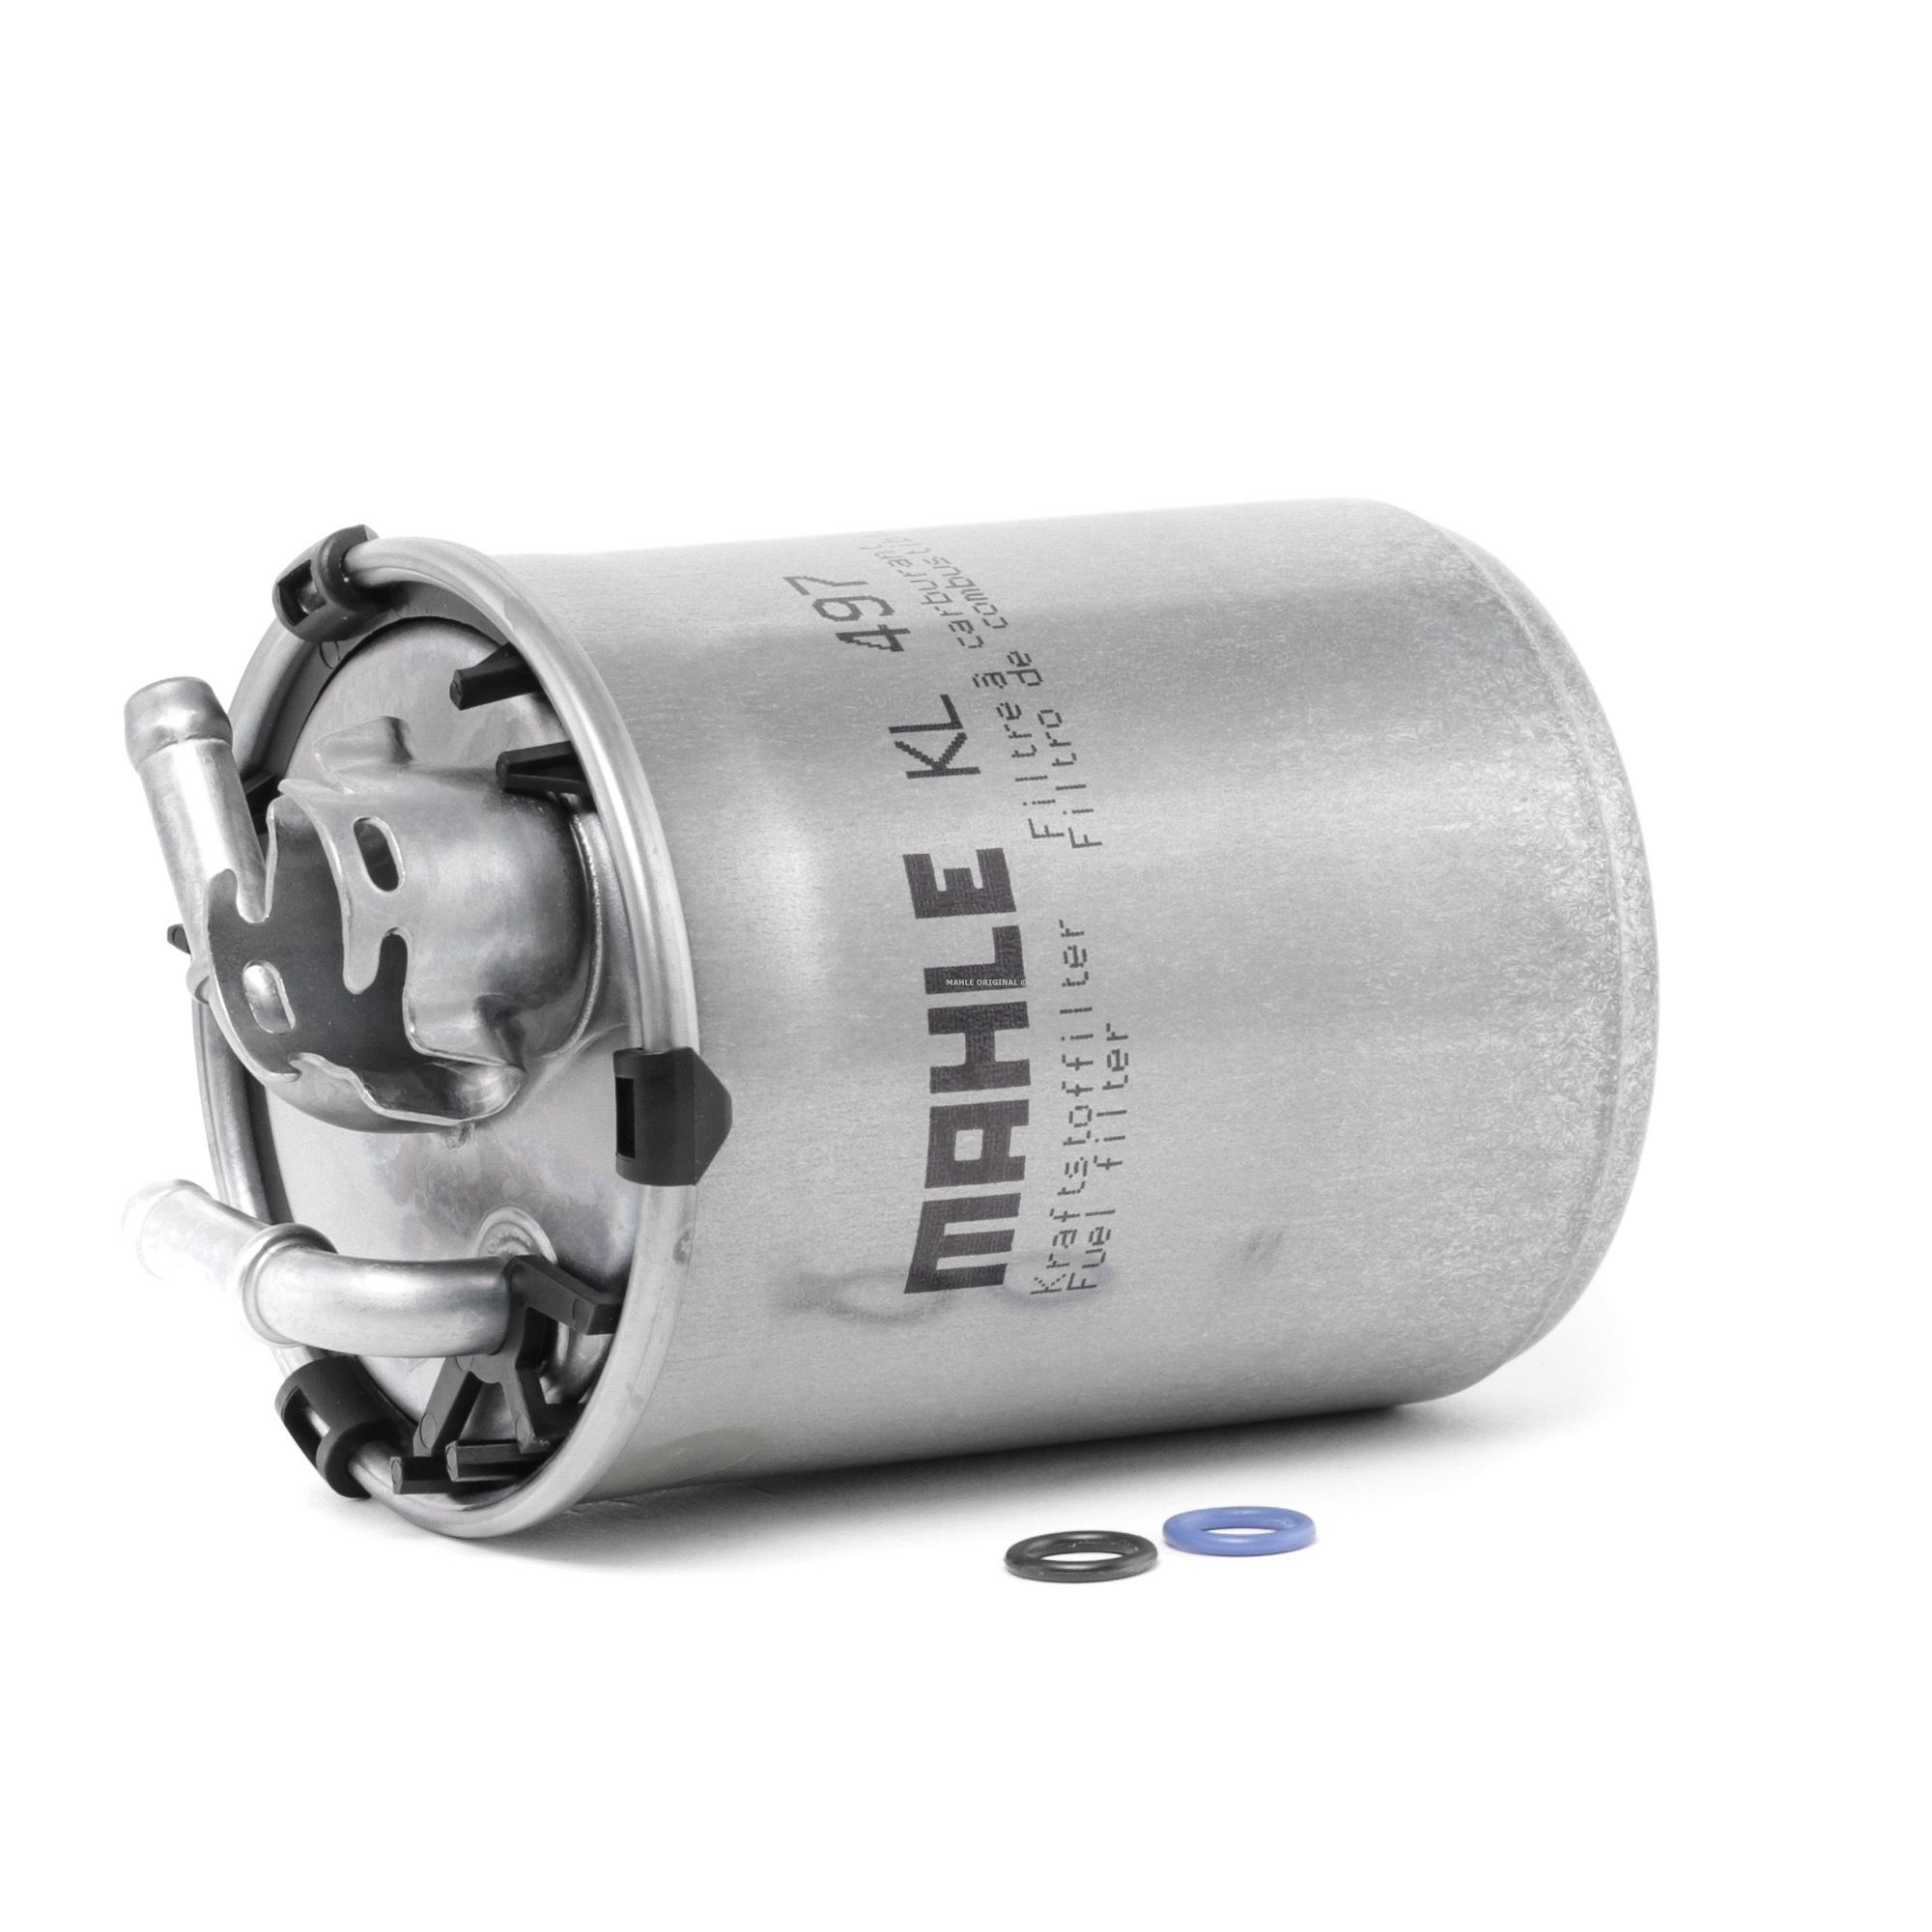 Original MAHLE ORIGINAL 70341699 Fuel filter KL 497D for SKODA ROOMSTER